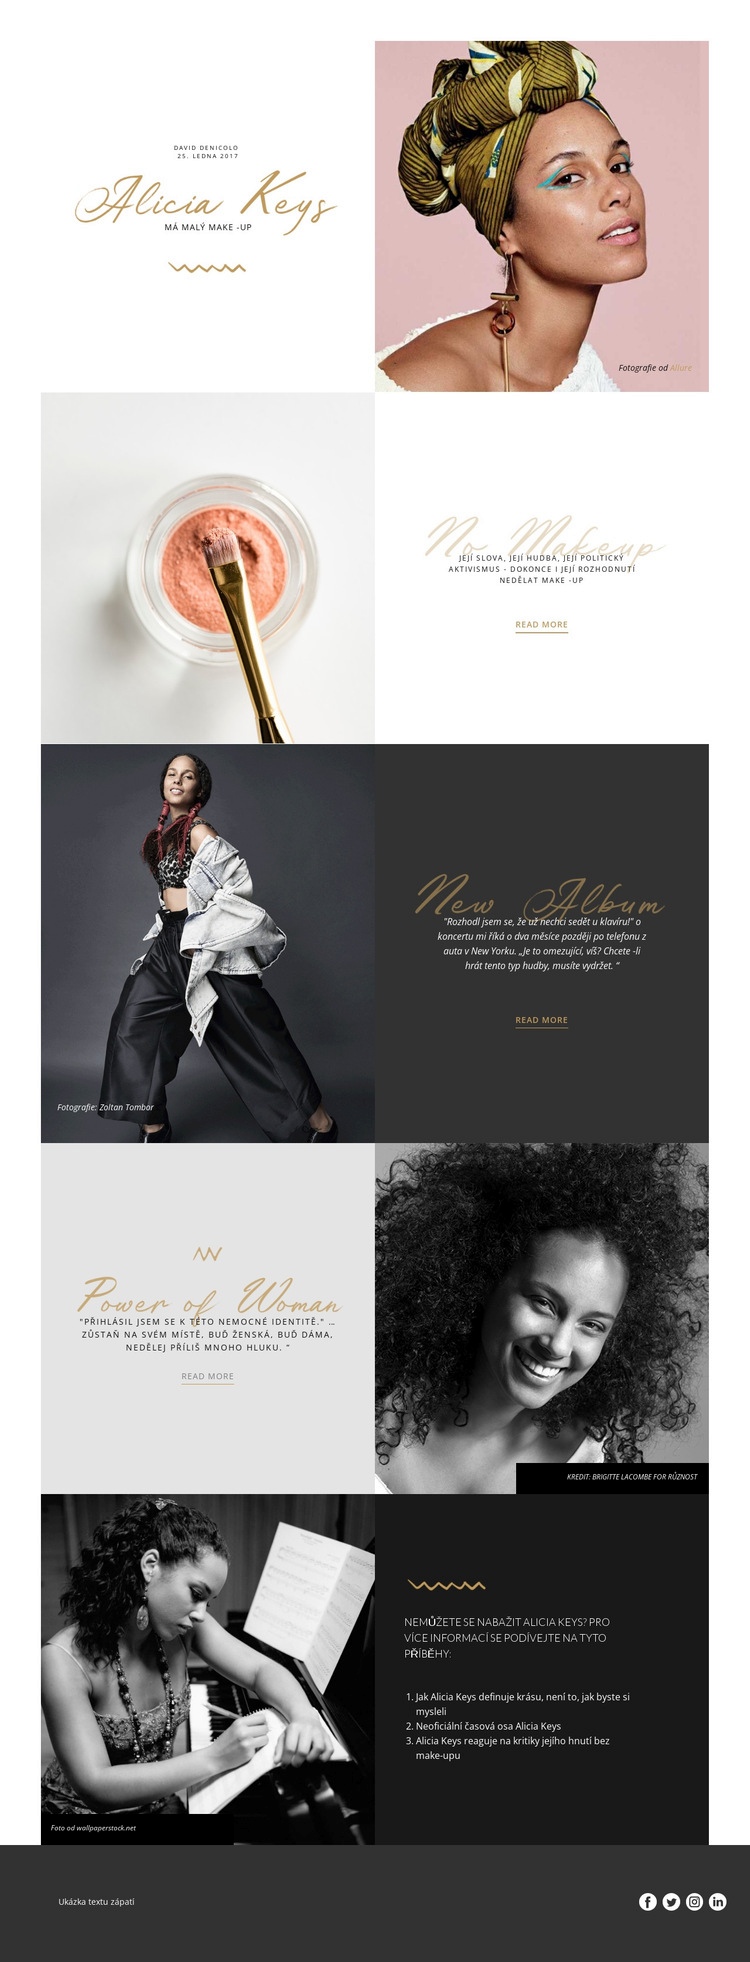 Alicia Keys Šablona webové stránky